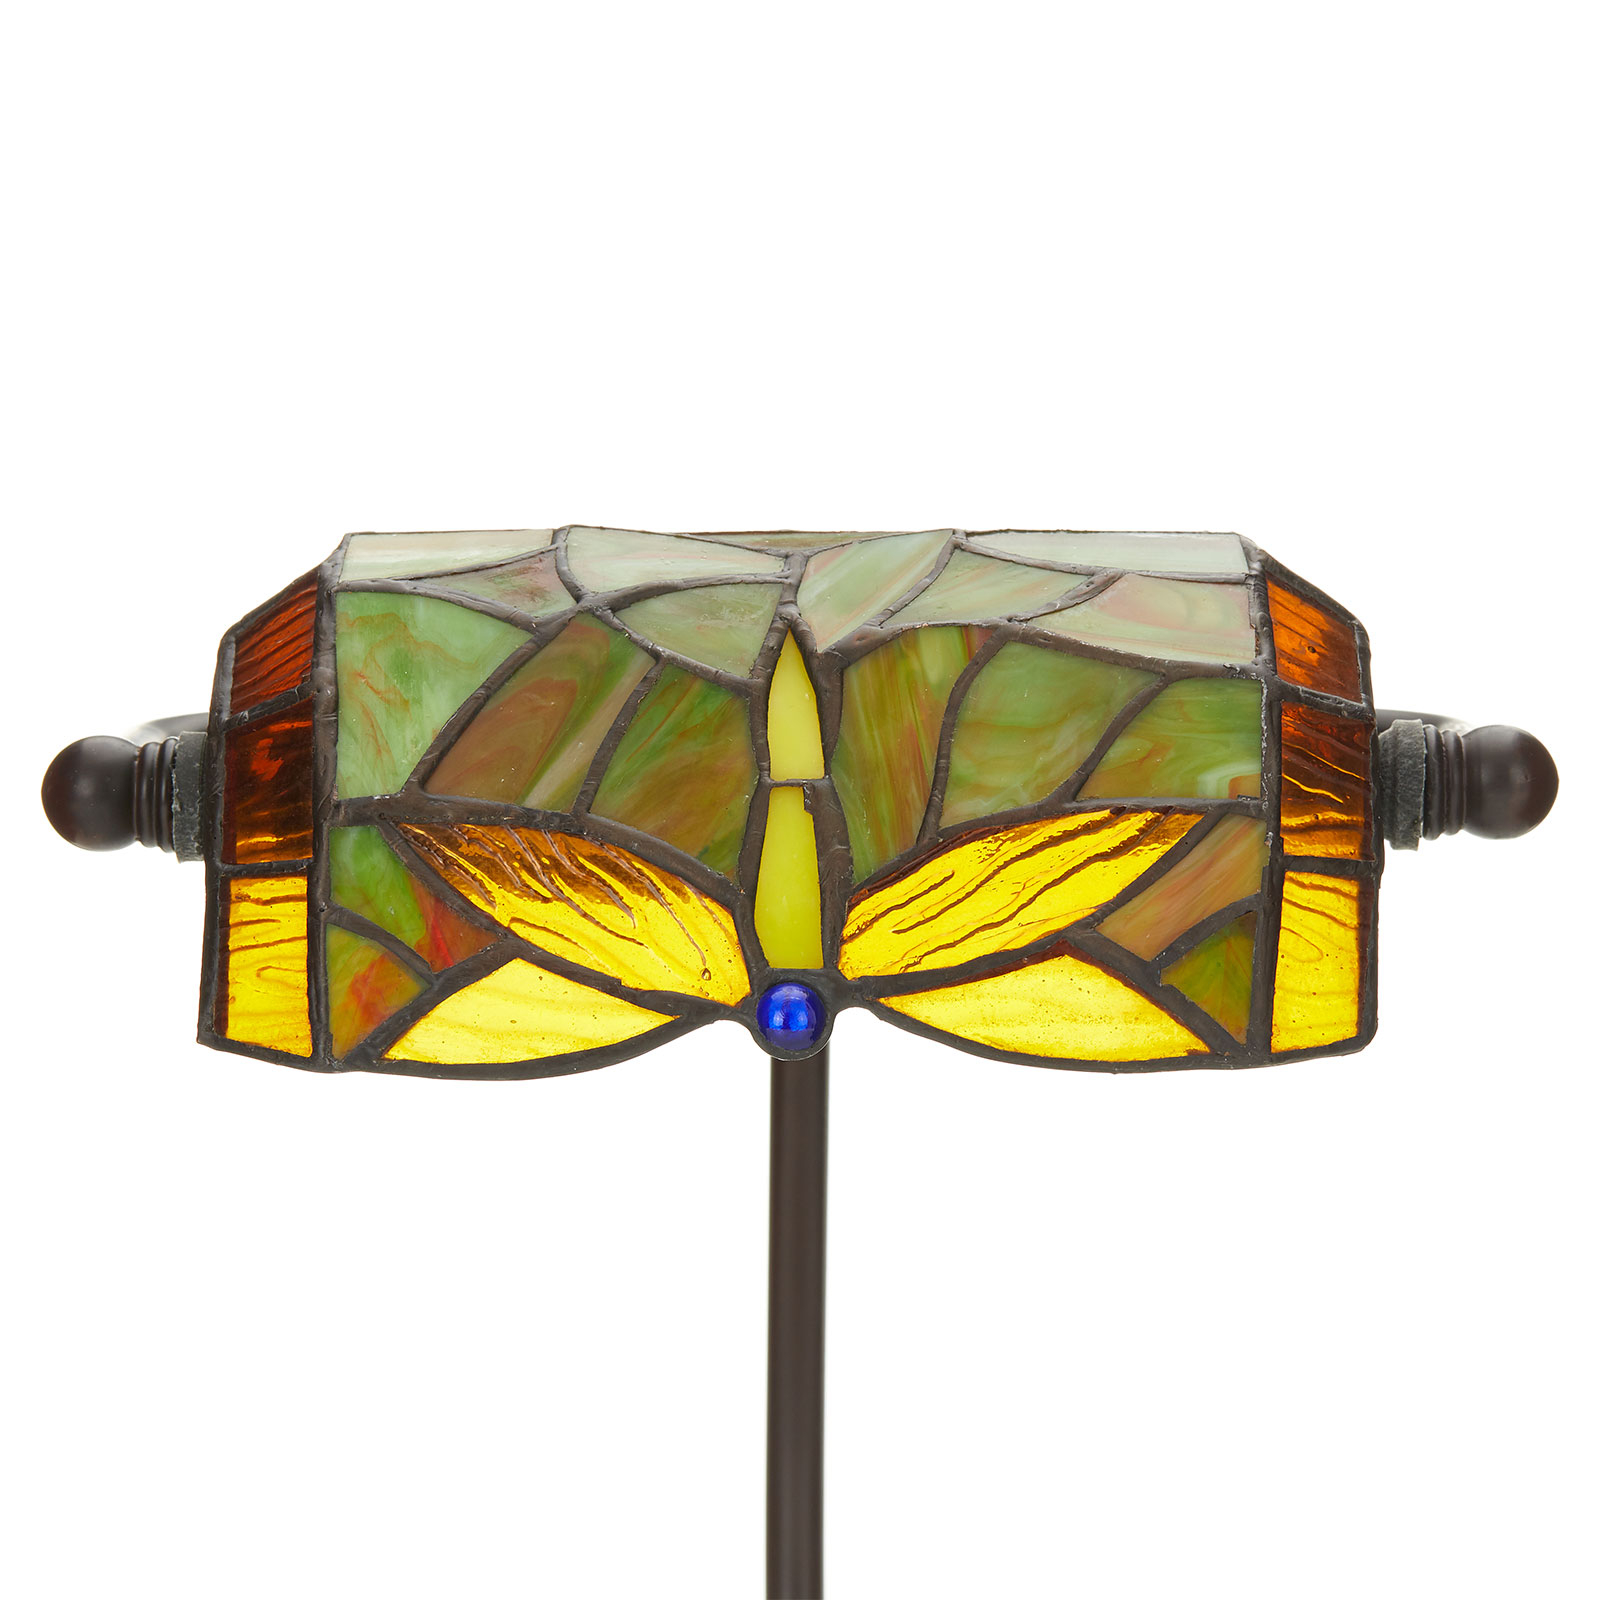 Úžasná stolná lampa DRAGONFLY, ručne vyrobená